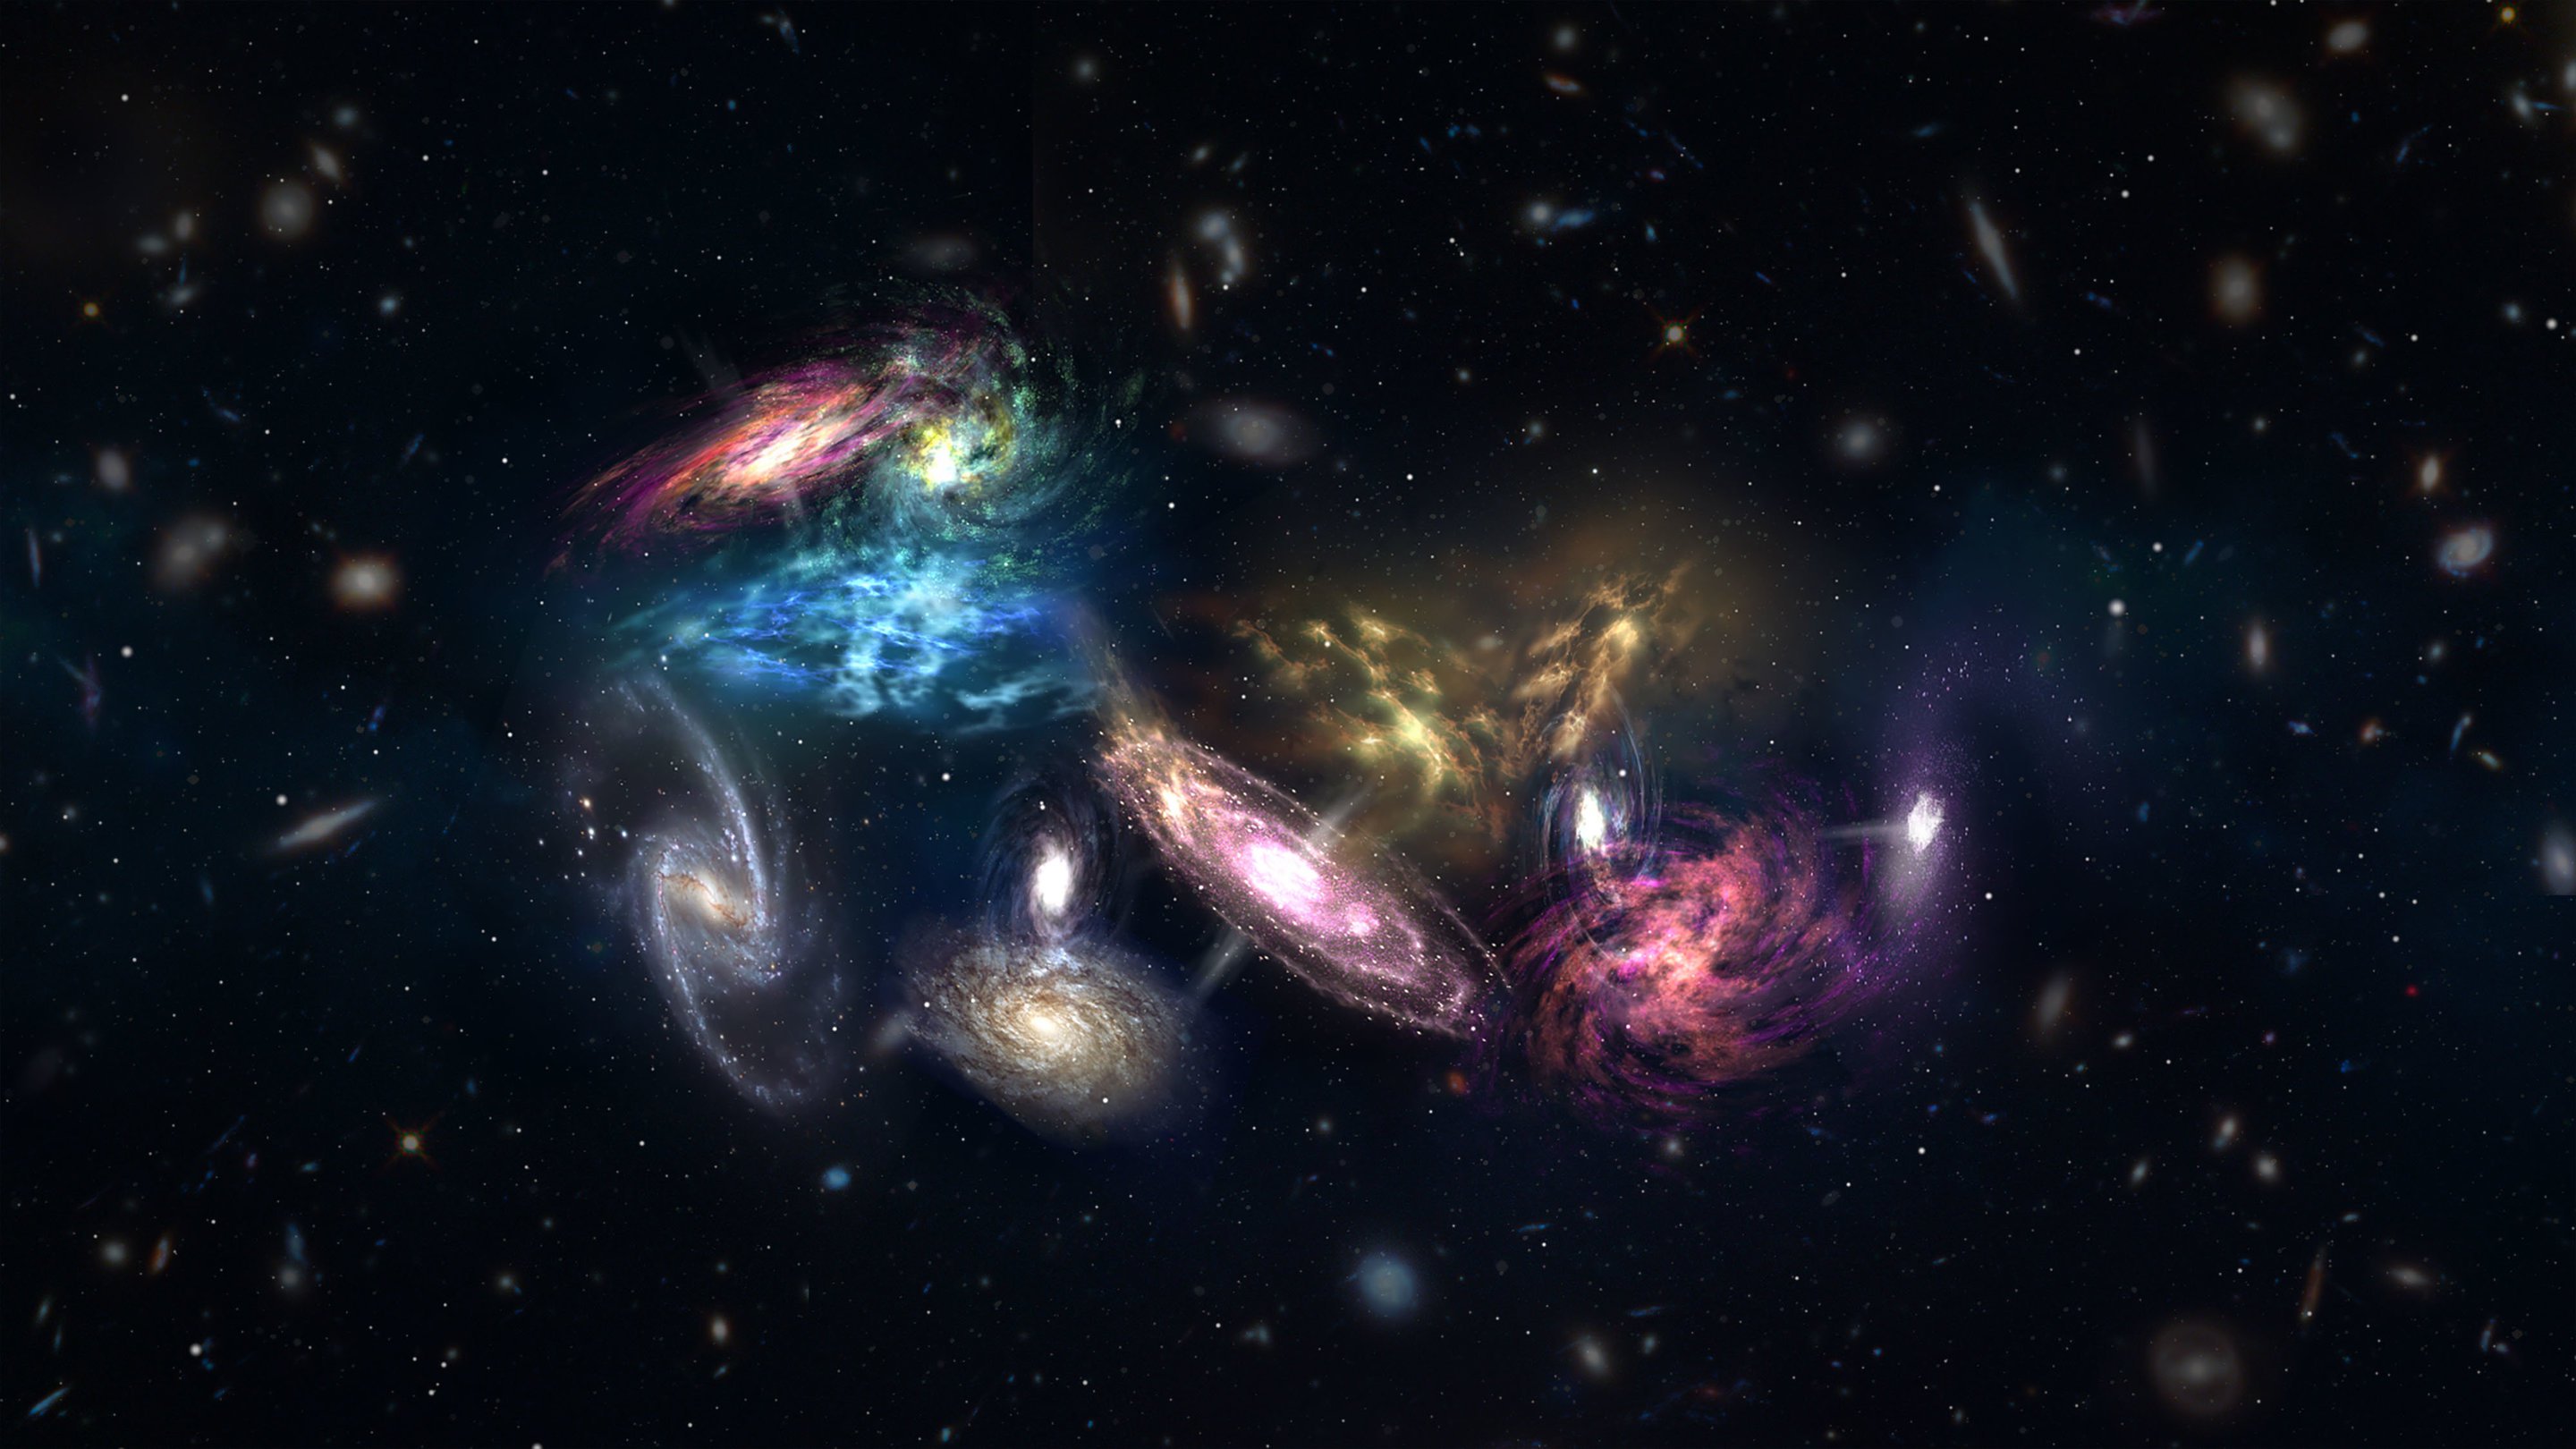 W dwóch galaktyk w ogóle nie zakładają ciemnej materii. Co się dzieje?